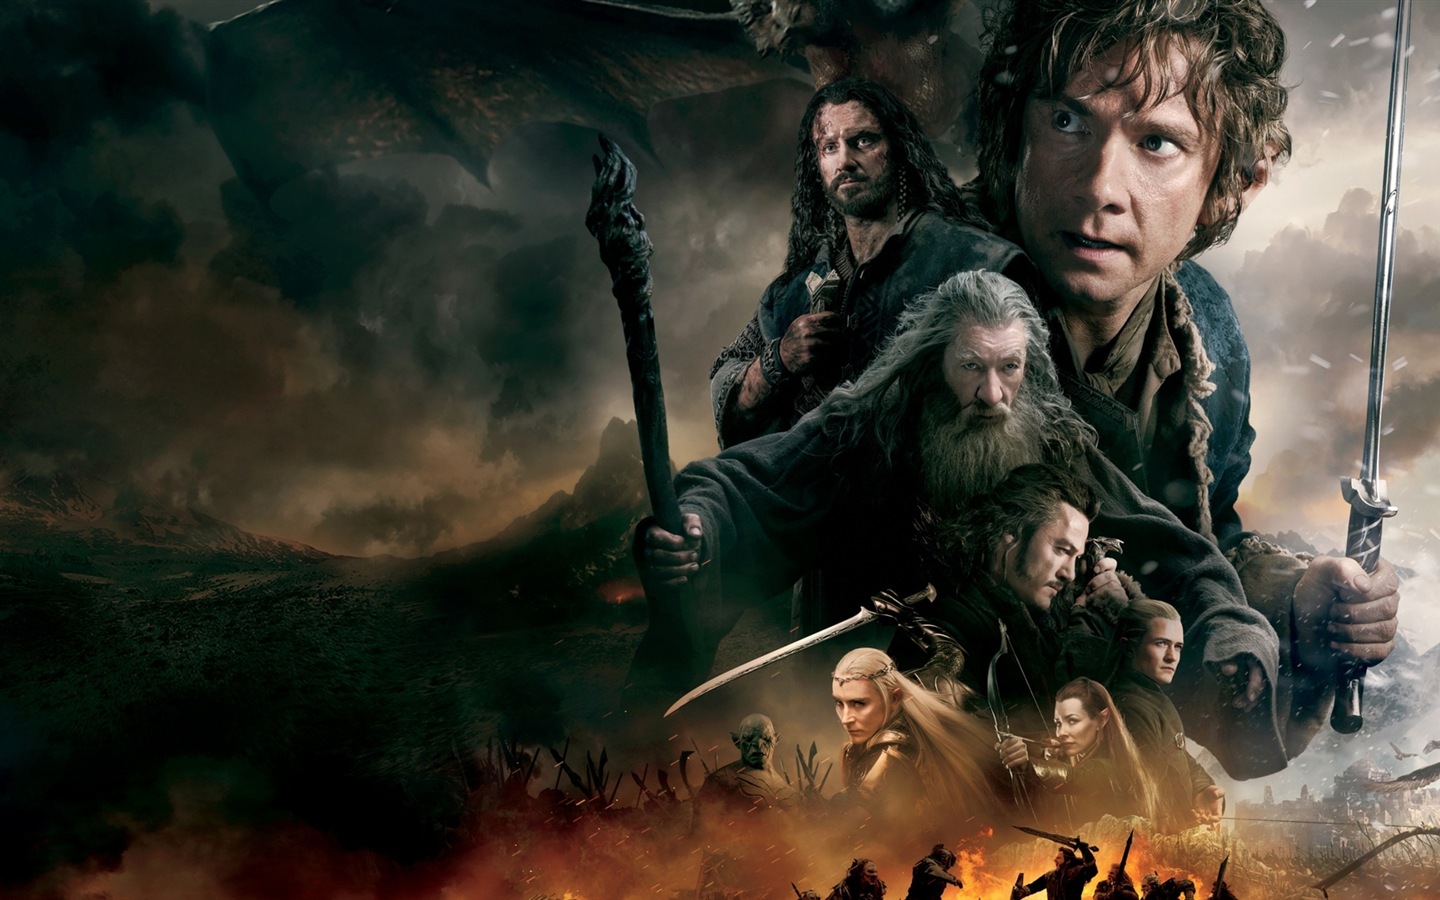 El Hobbit: La Batalla de los Cinco Ejércitos, fondos de pantalla de películas de alta definición #10 - 1440x900